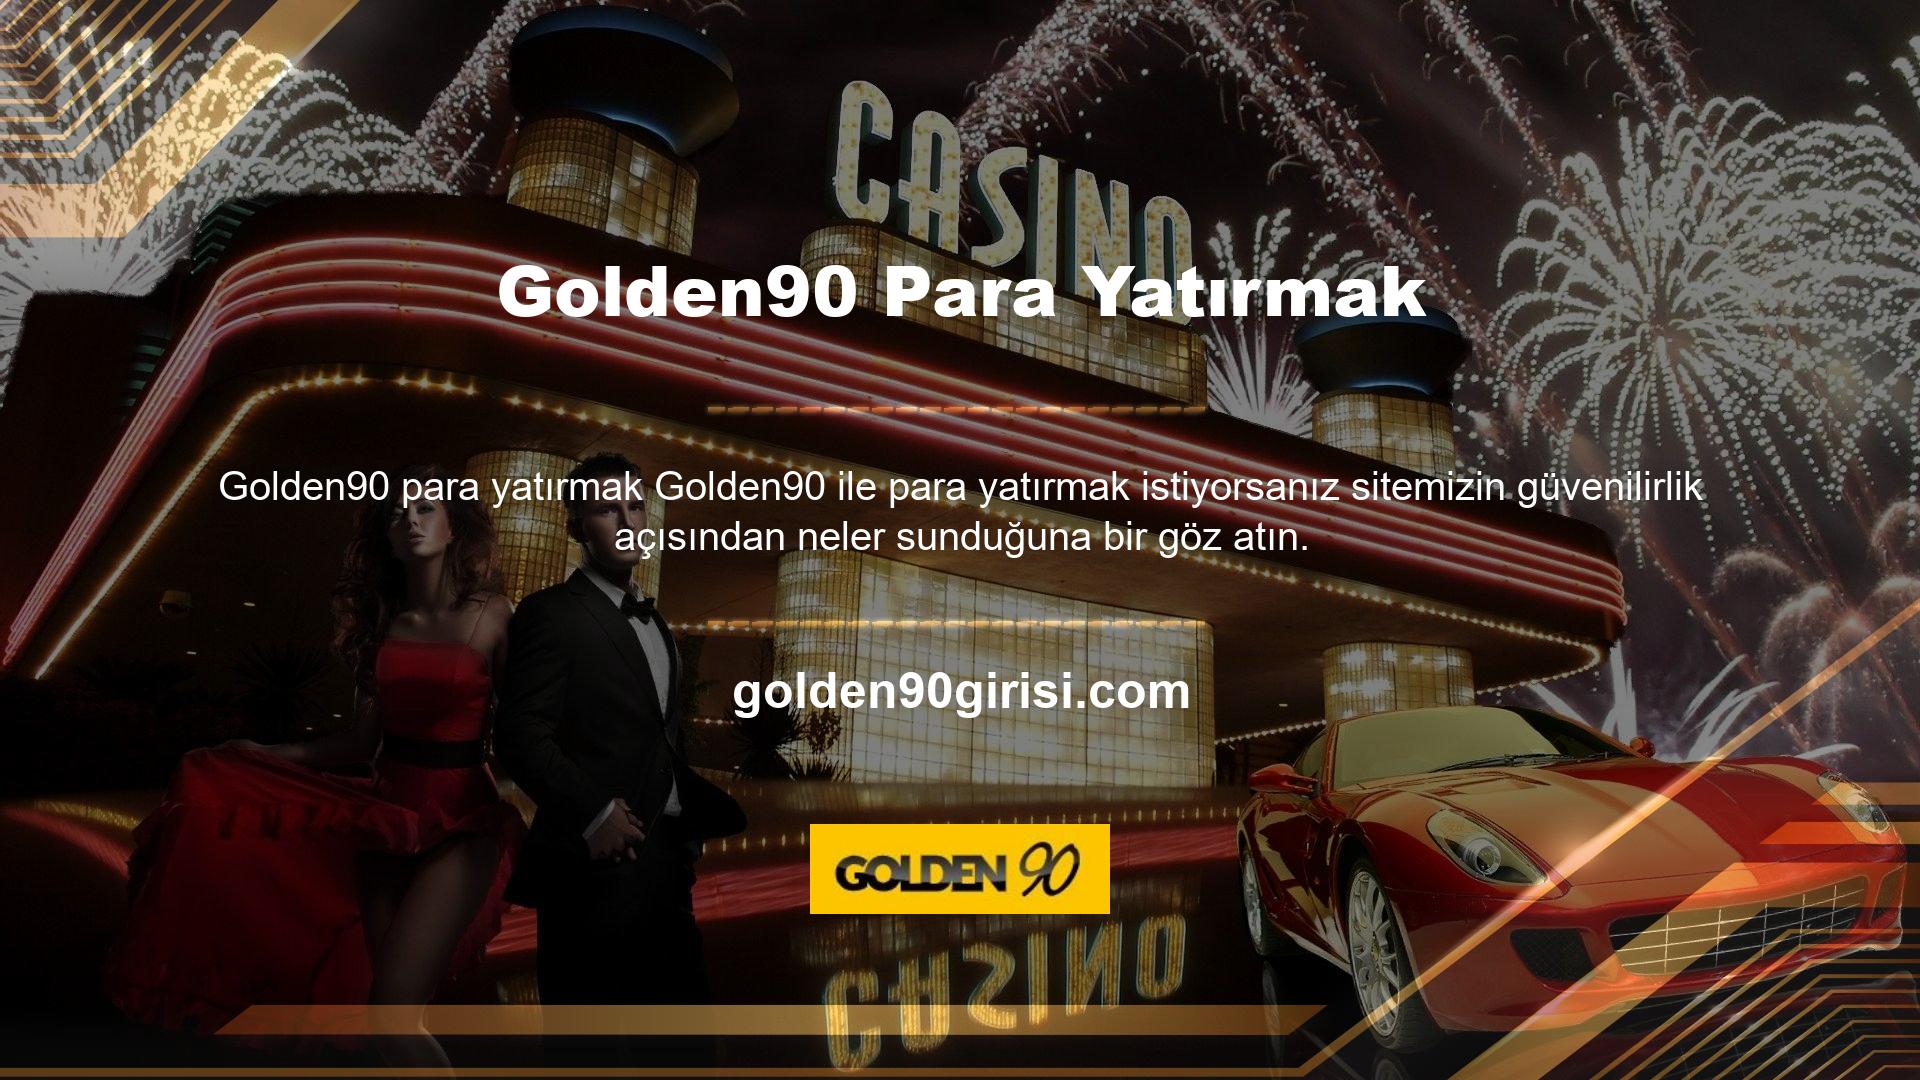 Golden90 Web Sitesi ve Casino Öncelikle şirket bilgilerini ve tabii ki lisans bilgilerini kontrol edin